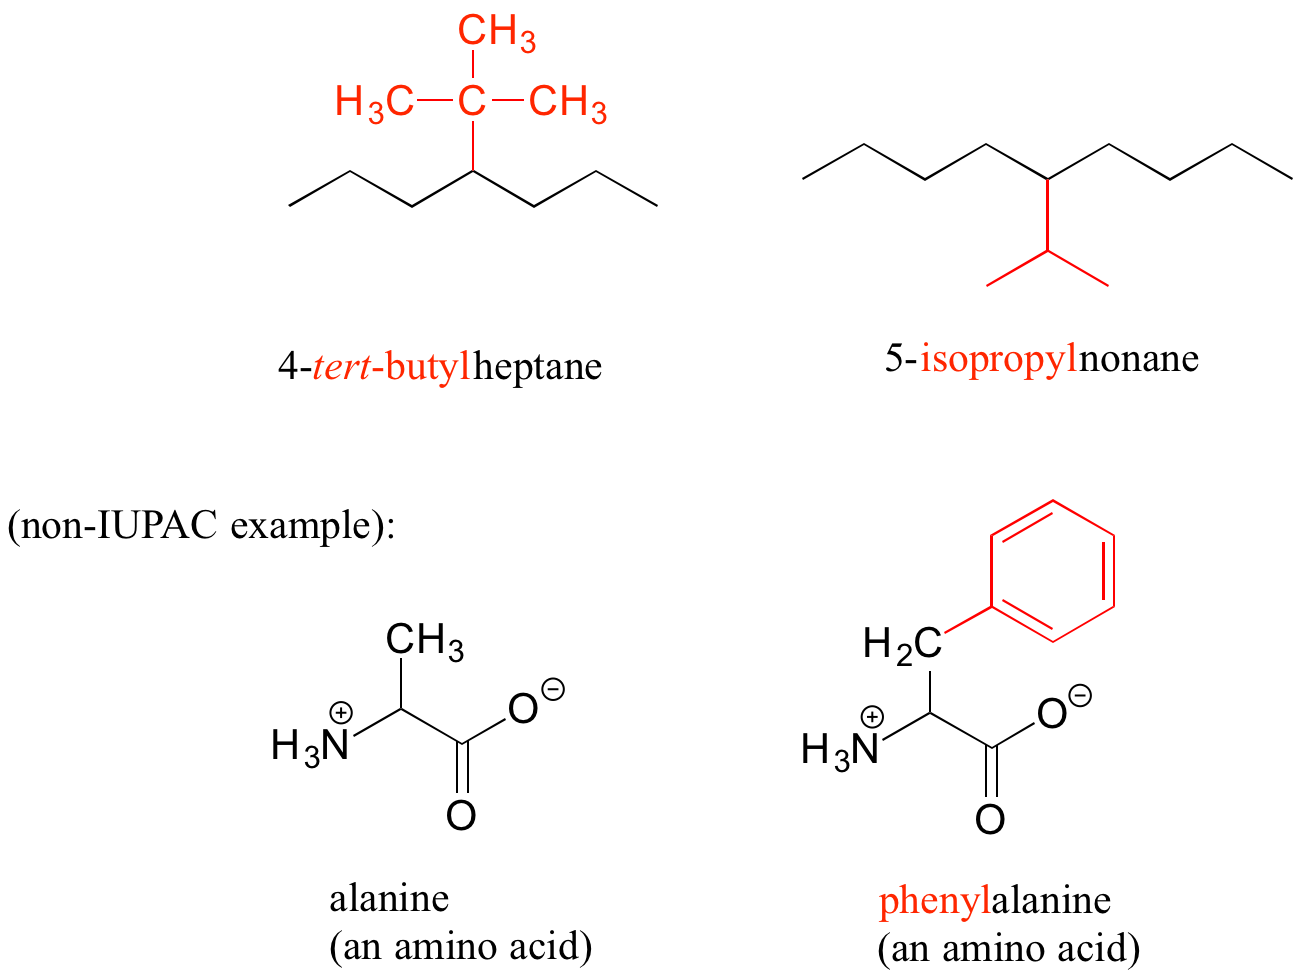 Arriba a la izquierda: 4-terc-butilheptano; grupo terc-butilo (carbono unido a tres grupos metilo) unido al cuarto carbono de la cadena de siete carbonos. Arriba a la derecha: 5-isopropilnonano: Grupo isopropilo (carbono unido a dos grupos metilo) unido al quinto carbono de una cadena de nueve carbonos. Abajo hay ejemplos que no son IUPAC. Abajo a la izquierda: alanina, un aminoácido con un grupo funcional ion carboxilato y ion amonio primario. Abajo a la derecha: fenilalanina, alanina con un grupo fenilo (un anillo de benceno) unido al grupo metilo del aminoácido.